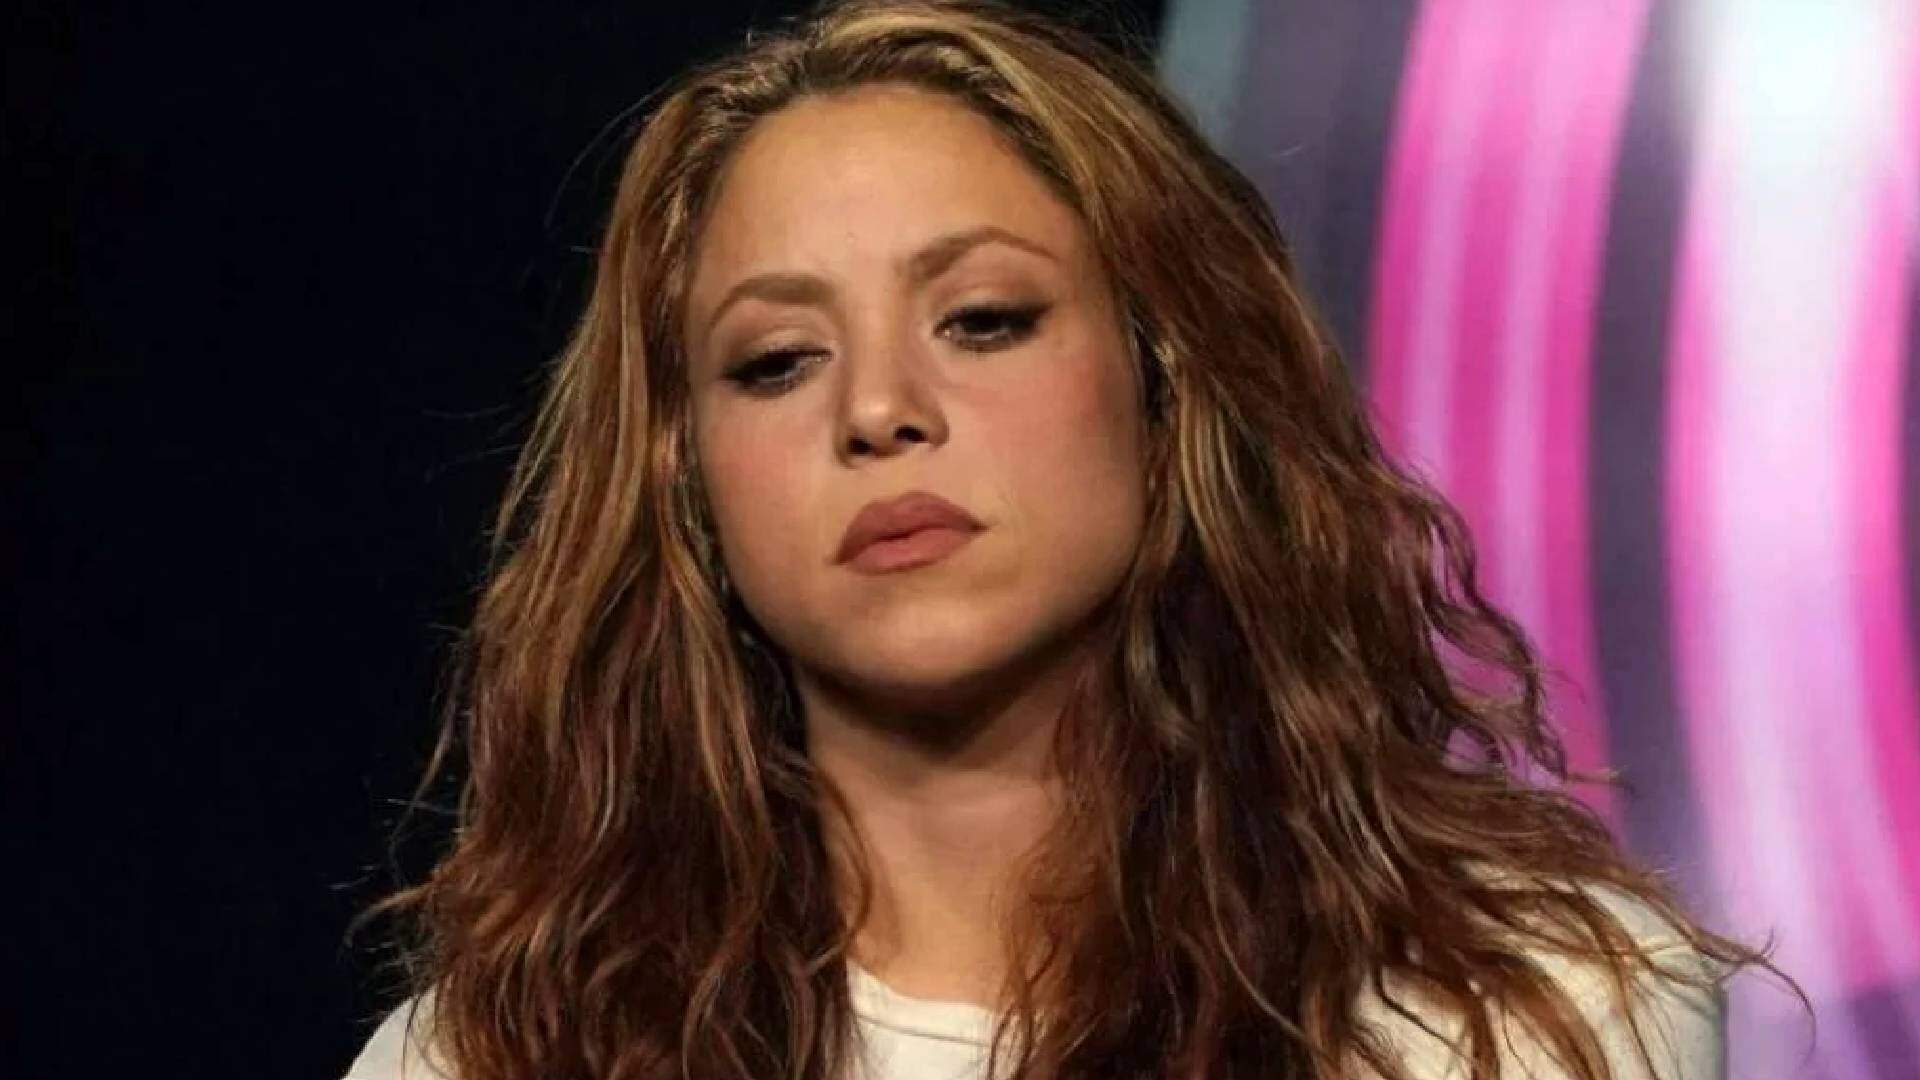 Nova polêmica de Shakira! Acusação grave contra artista vem à tona e deixa fãs perplexos após denúncia